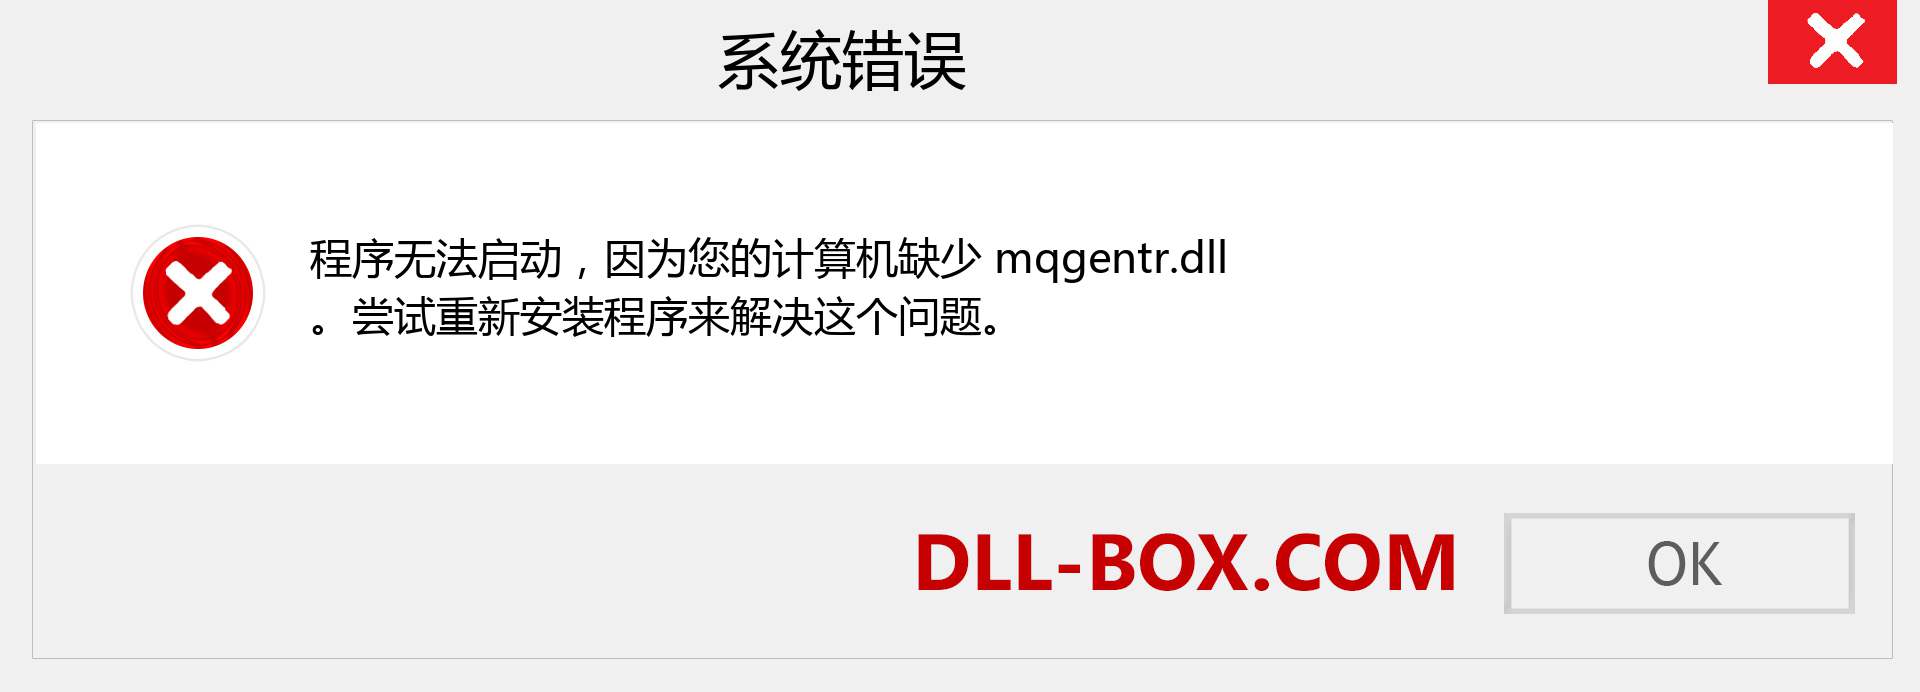 mqgentr.dll 文件丢失？。 适用于 Windows 7、8、10 的下载 - 修复 Windows、照片、图像上的 mqgentr dll 丢失错误